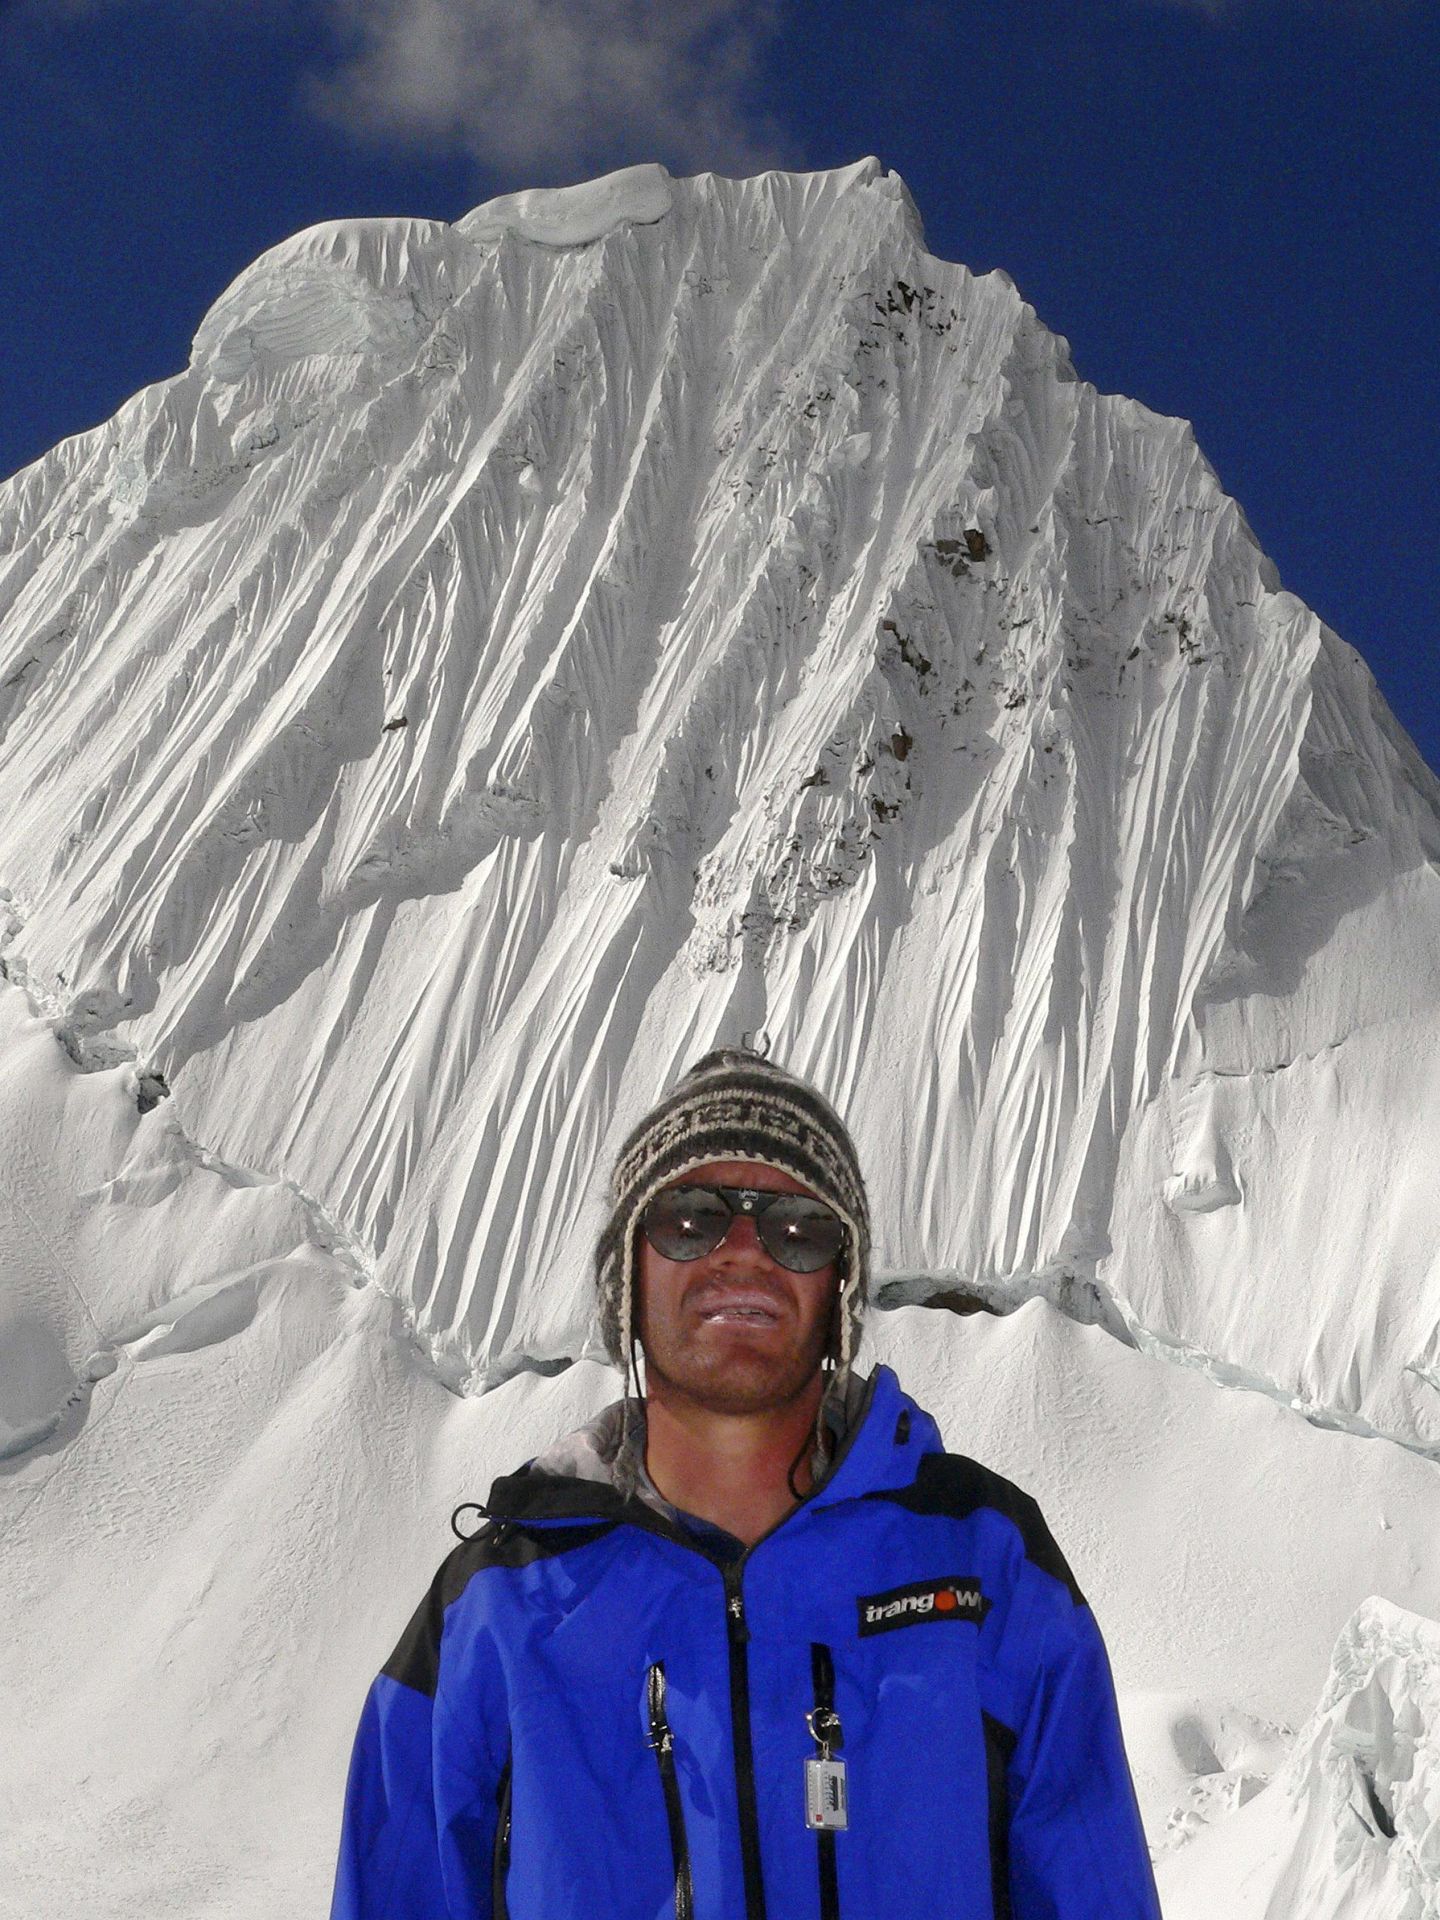 Fotografía del montañero español Javier Camacho en los Andes peruanos. (EFE/AEFONA)